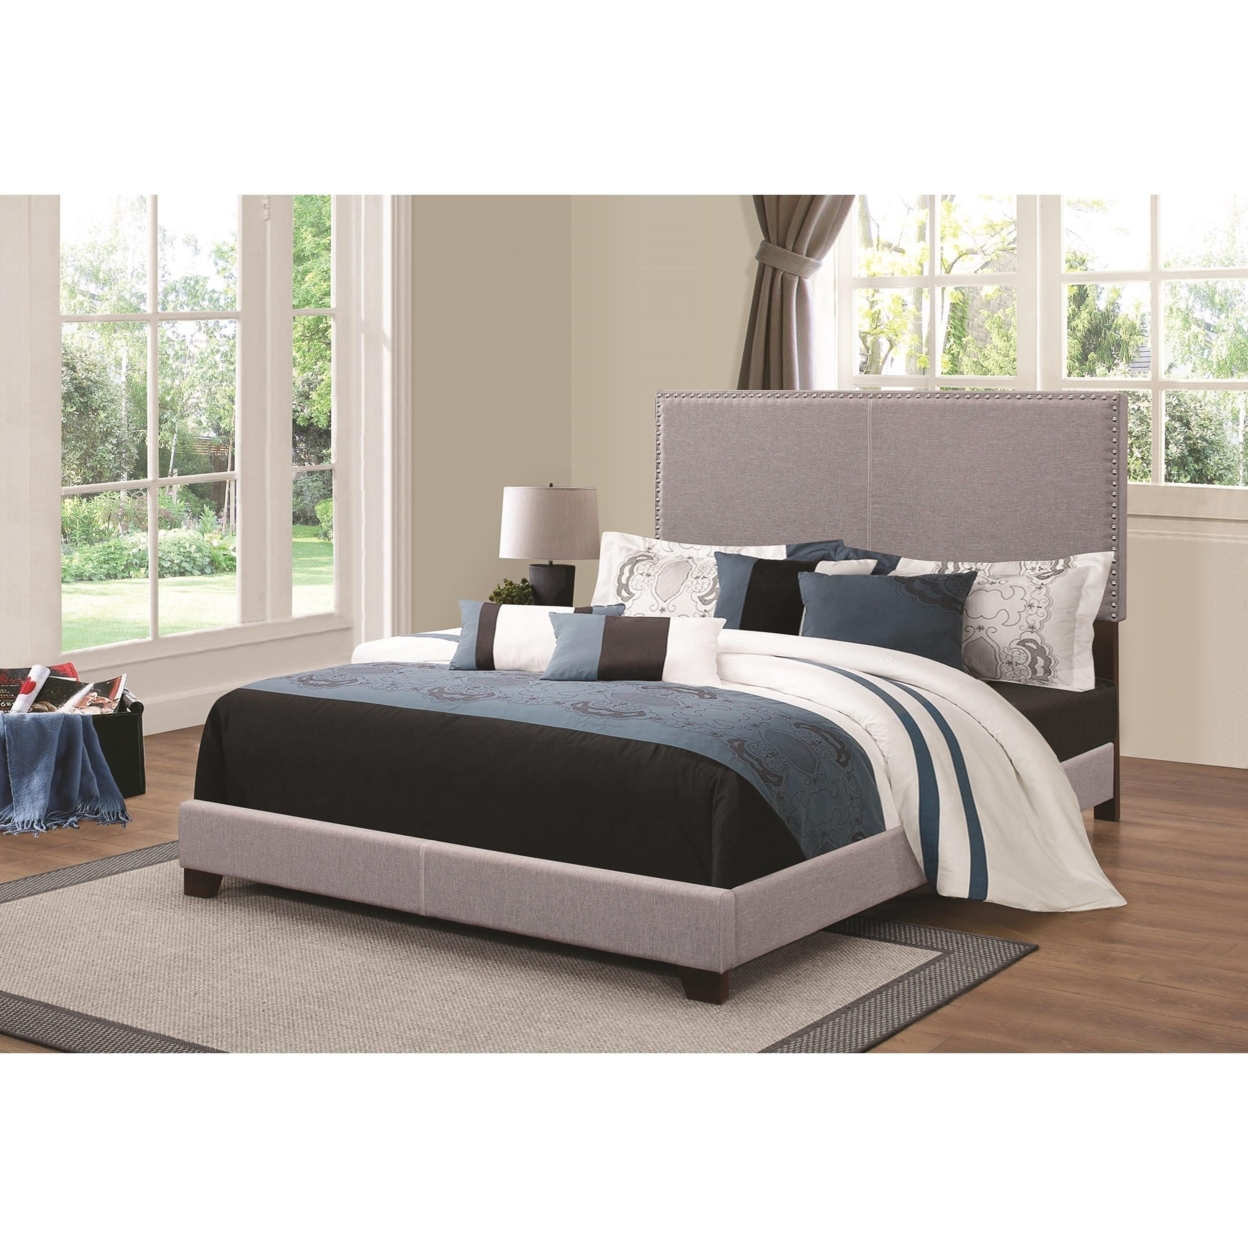 Grey Upholstered Full Bed- Saltoro Sherpi